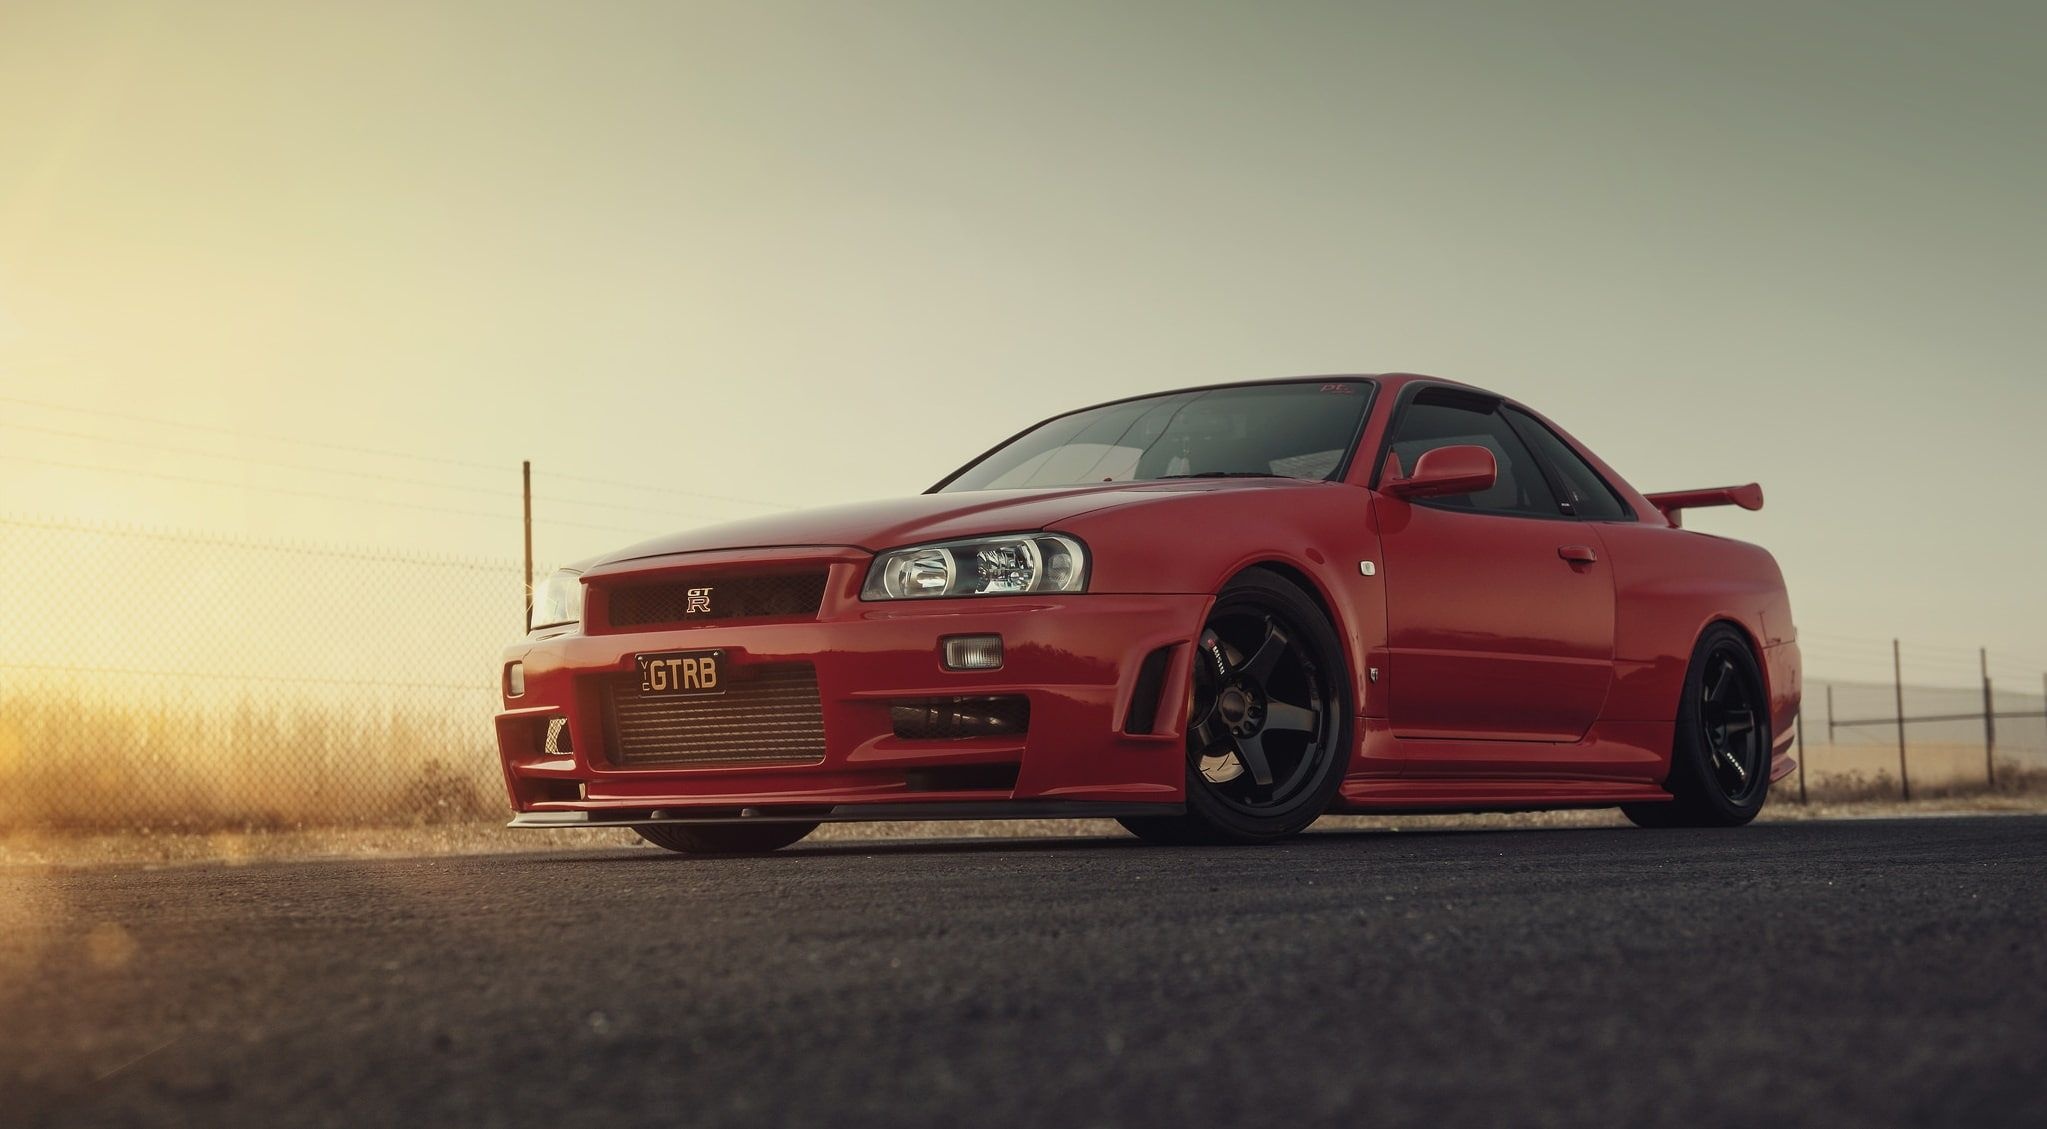 GTR Skyline, Striking red color, HD wallpaper, Nissan GT-R, 2050x1130 HD Desktop